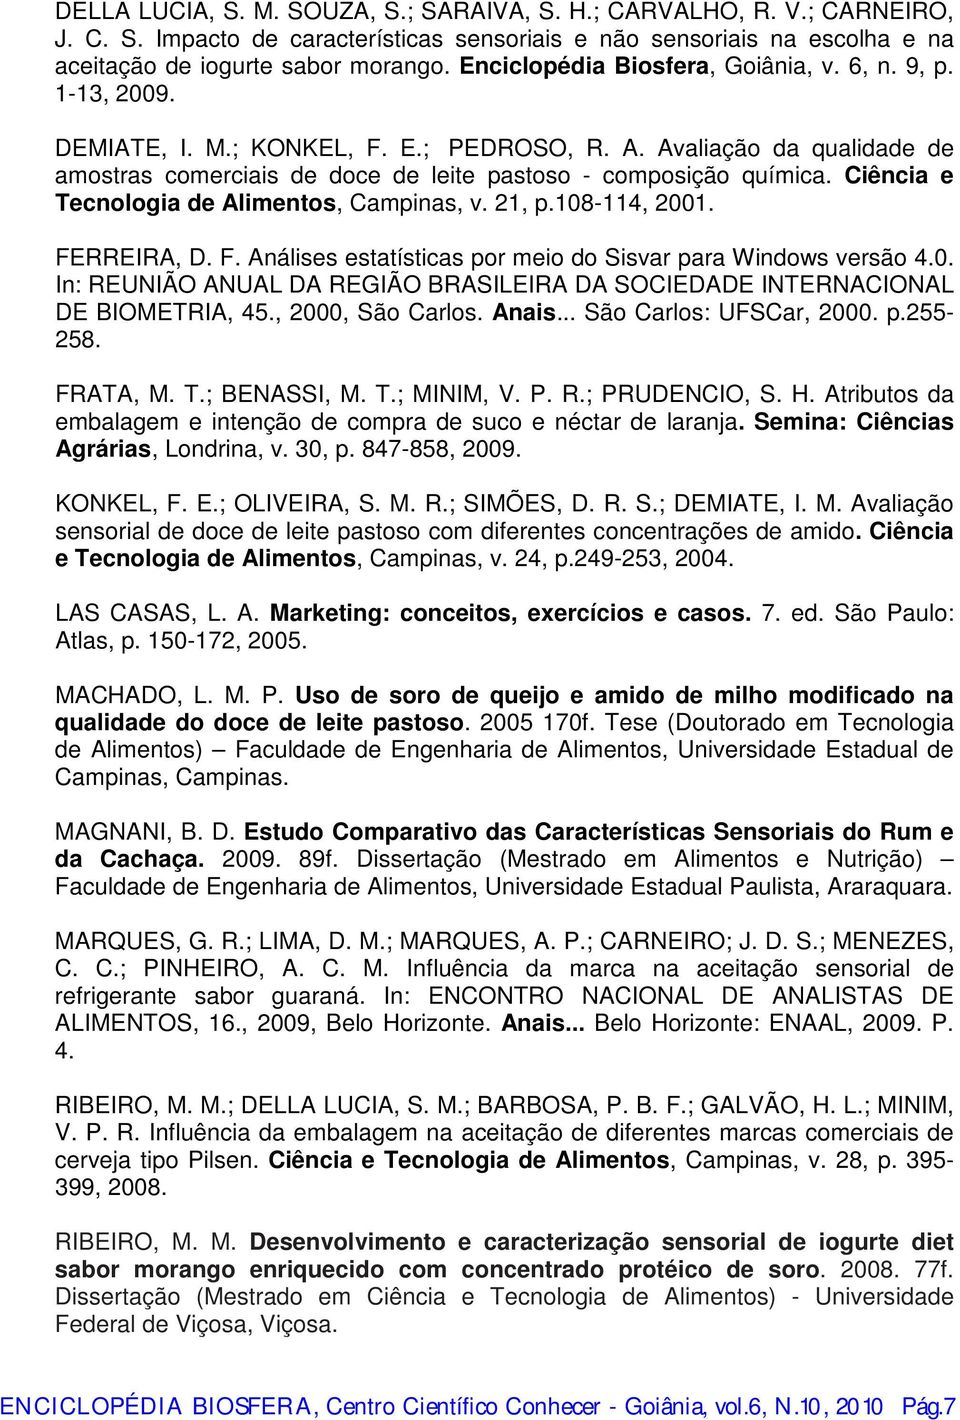 Ciênci e Tecnologi de Alimentos, Cmpins, v. 21, p.108-114, 2001. FERREIRA, D. F. Análises esttístics por meio do Sisvr pr Windows versão 4.0. In: REUNIÃO ANUAL DA REGIÃO BRASILEIRA DA SOCIEDADE INTERNACIONAL DE BIOMETRIA, 45.